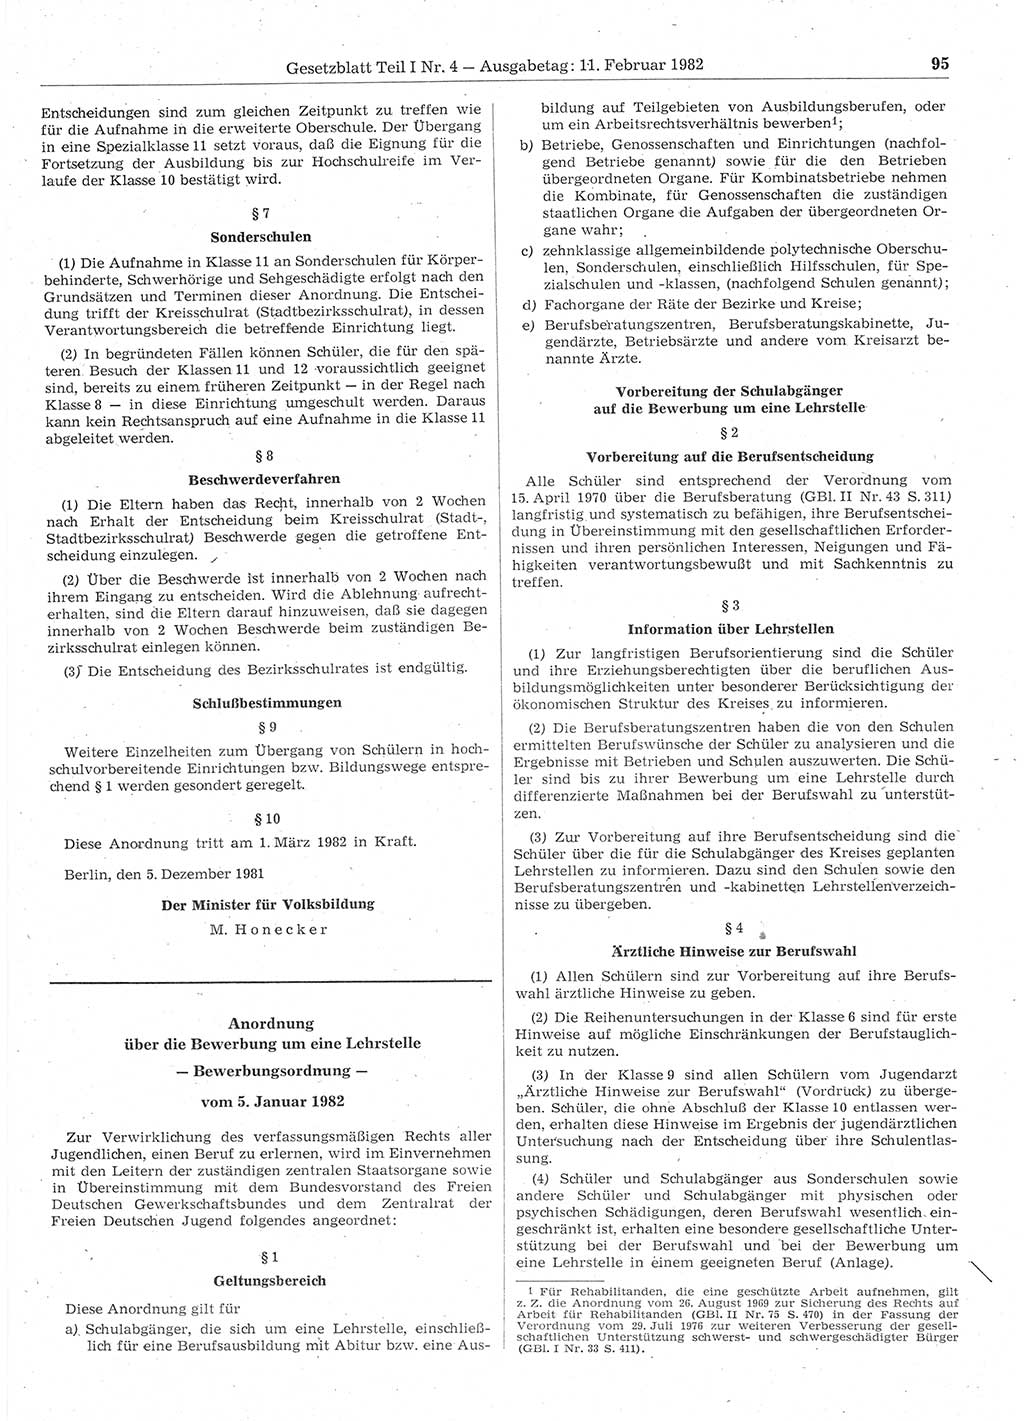 Gesetzblatt (GBl.) der Deutschen Demokratischen Republik (DDR) Teil Ⅰ 1982, Seite 95 (GBl. DDR Ⅰ 1982, S. 95)